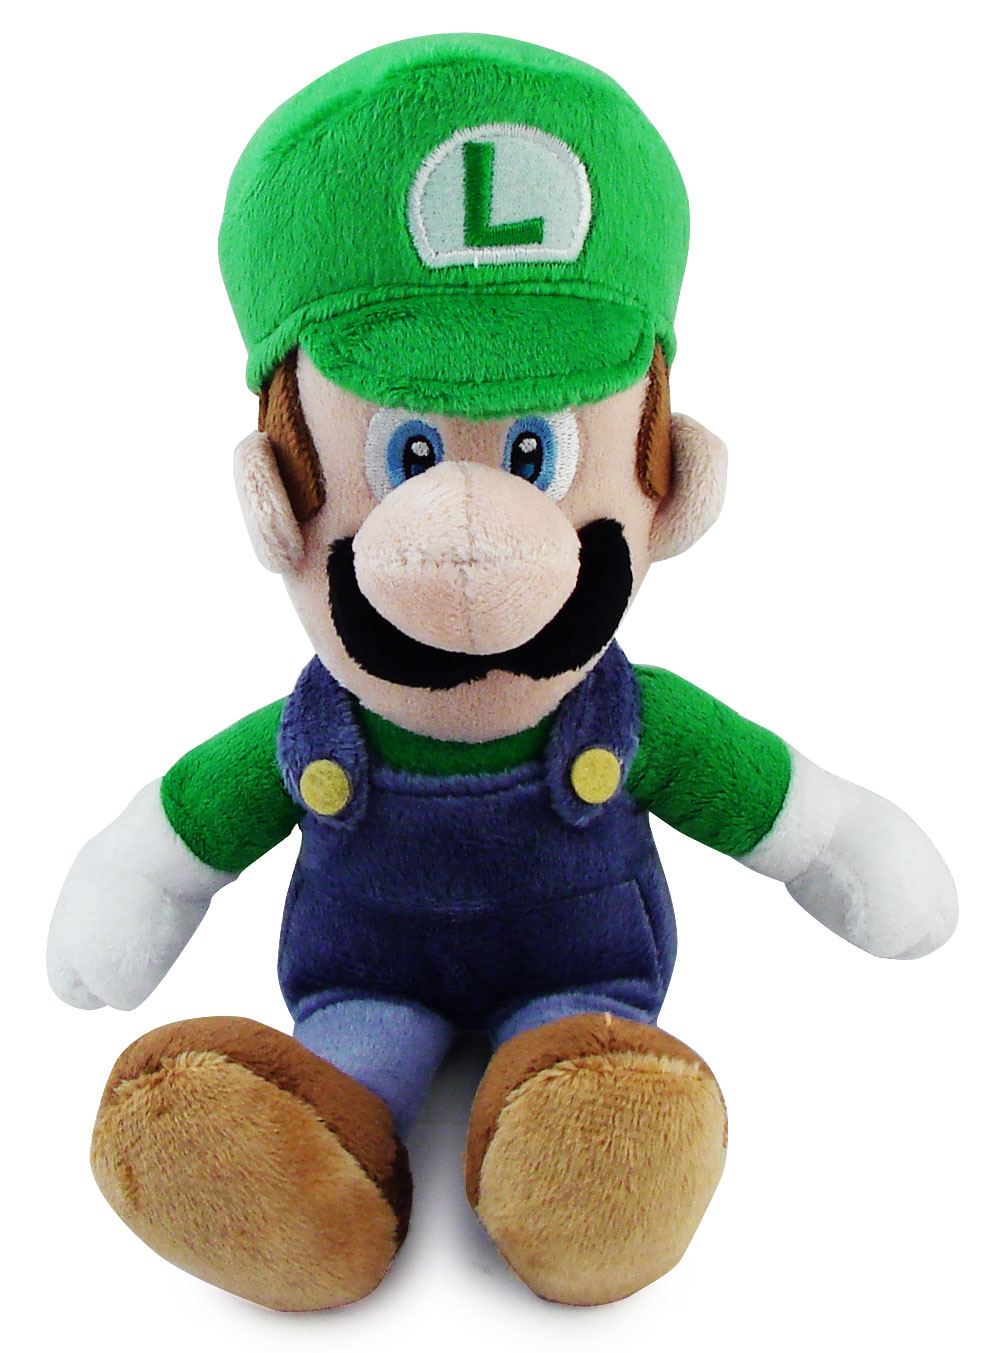 Super Mario Plush Series Plush Doll: Luigi.